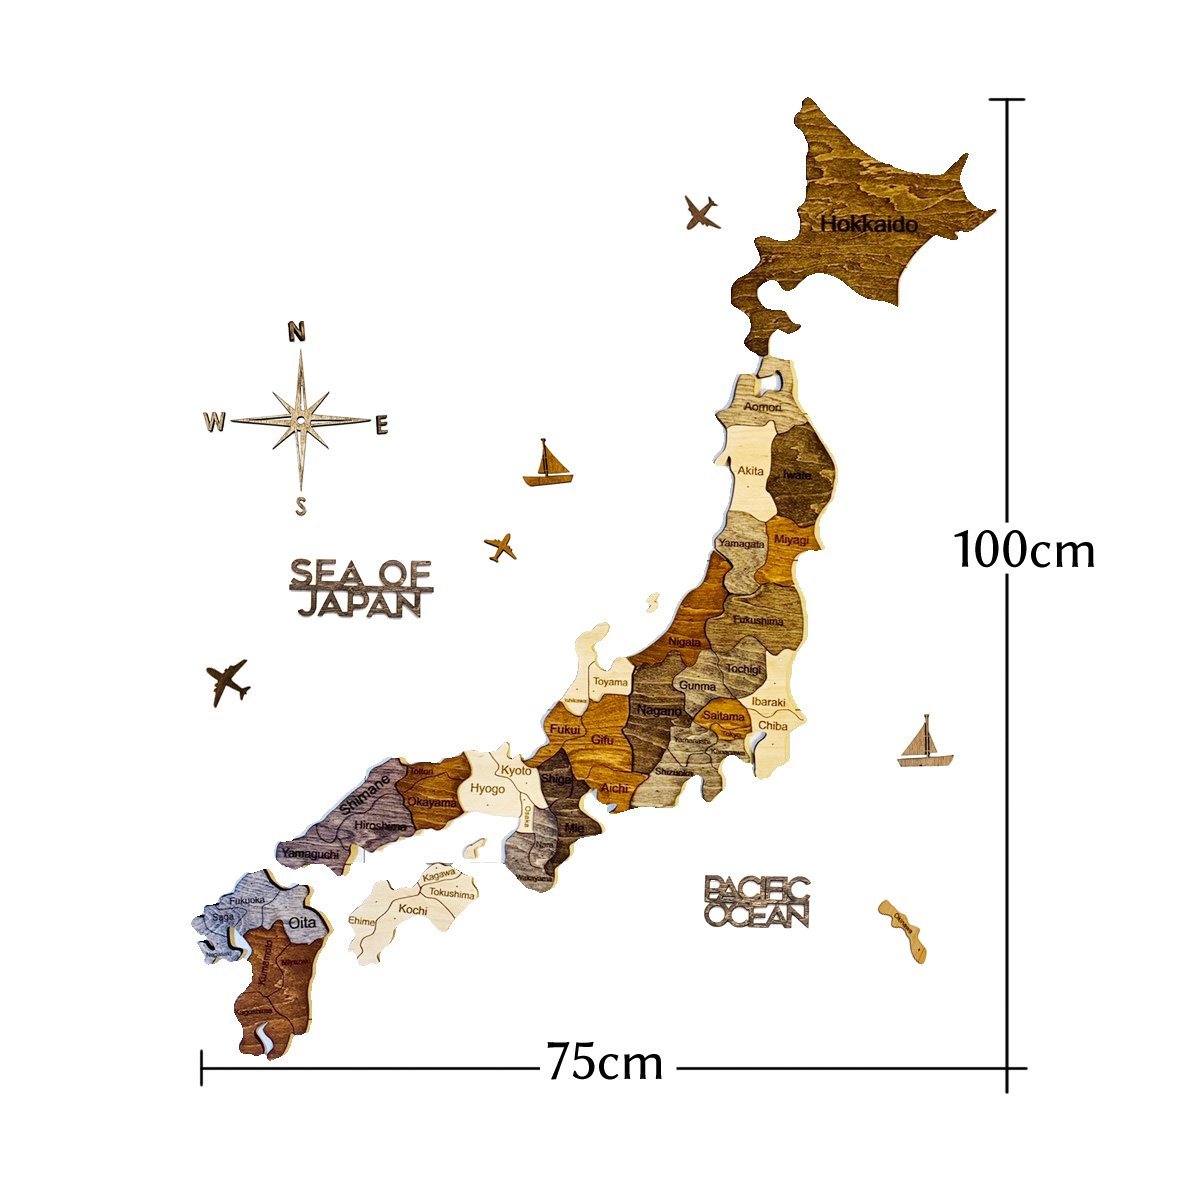 3d Wood Japan Map インテリア用壁掛け木製日本地図 翌日発送 Enjoy The Wood 日本公式サイト 壁掛け木製世界地図 通販